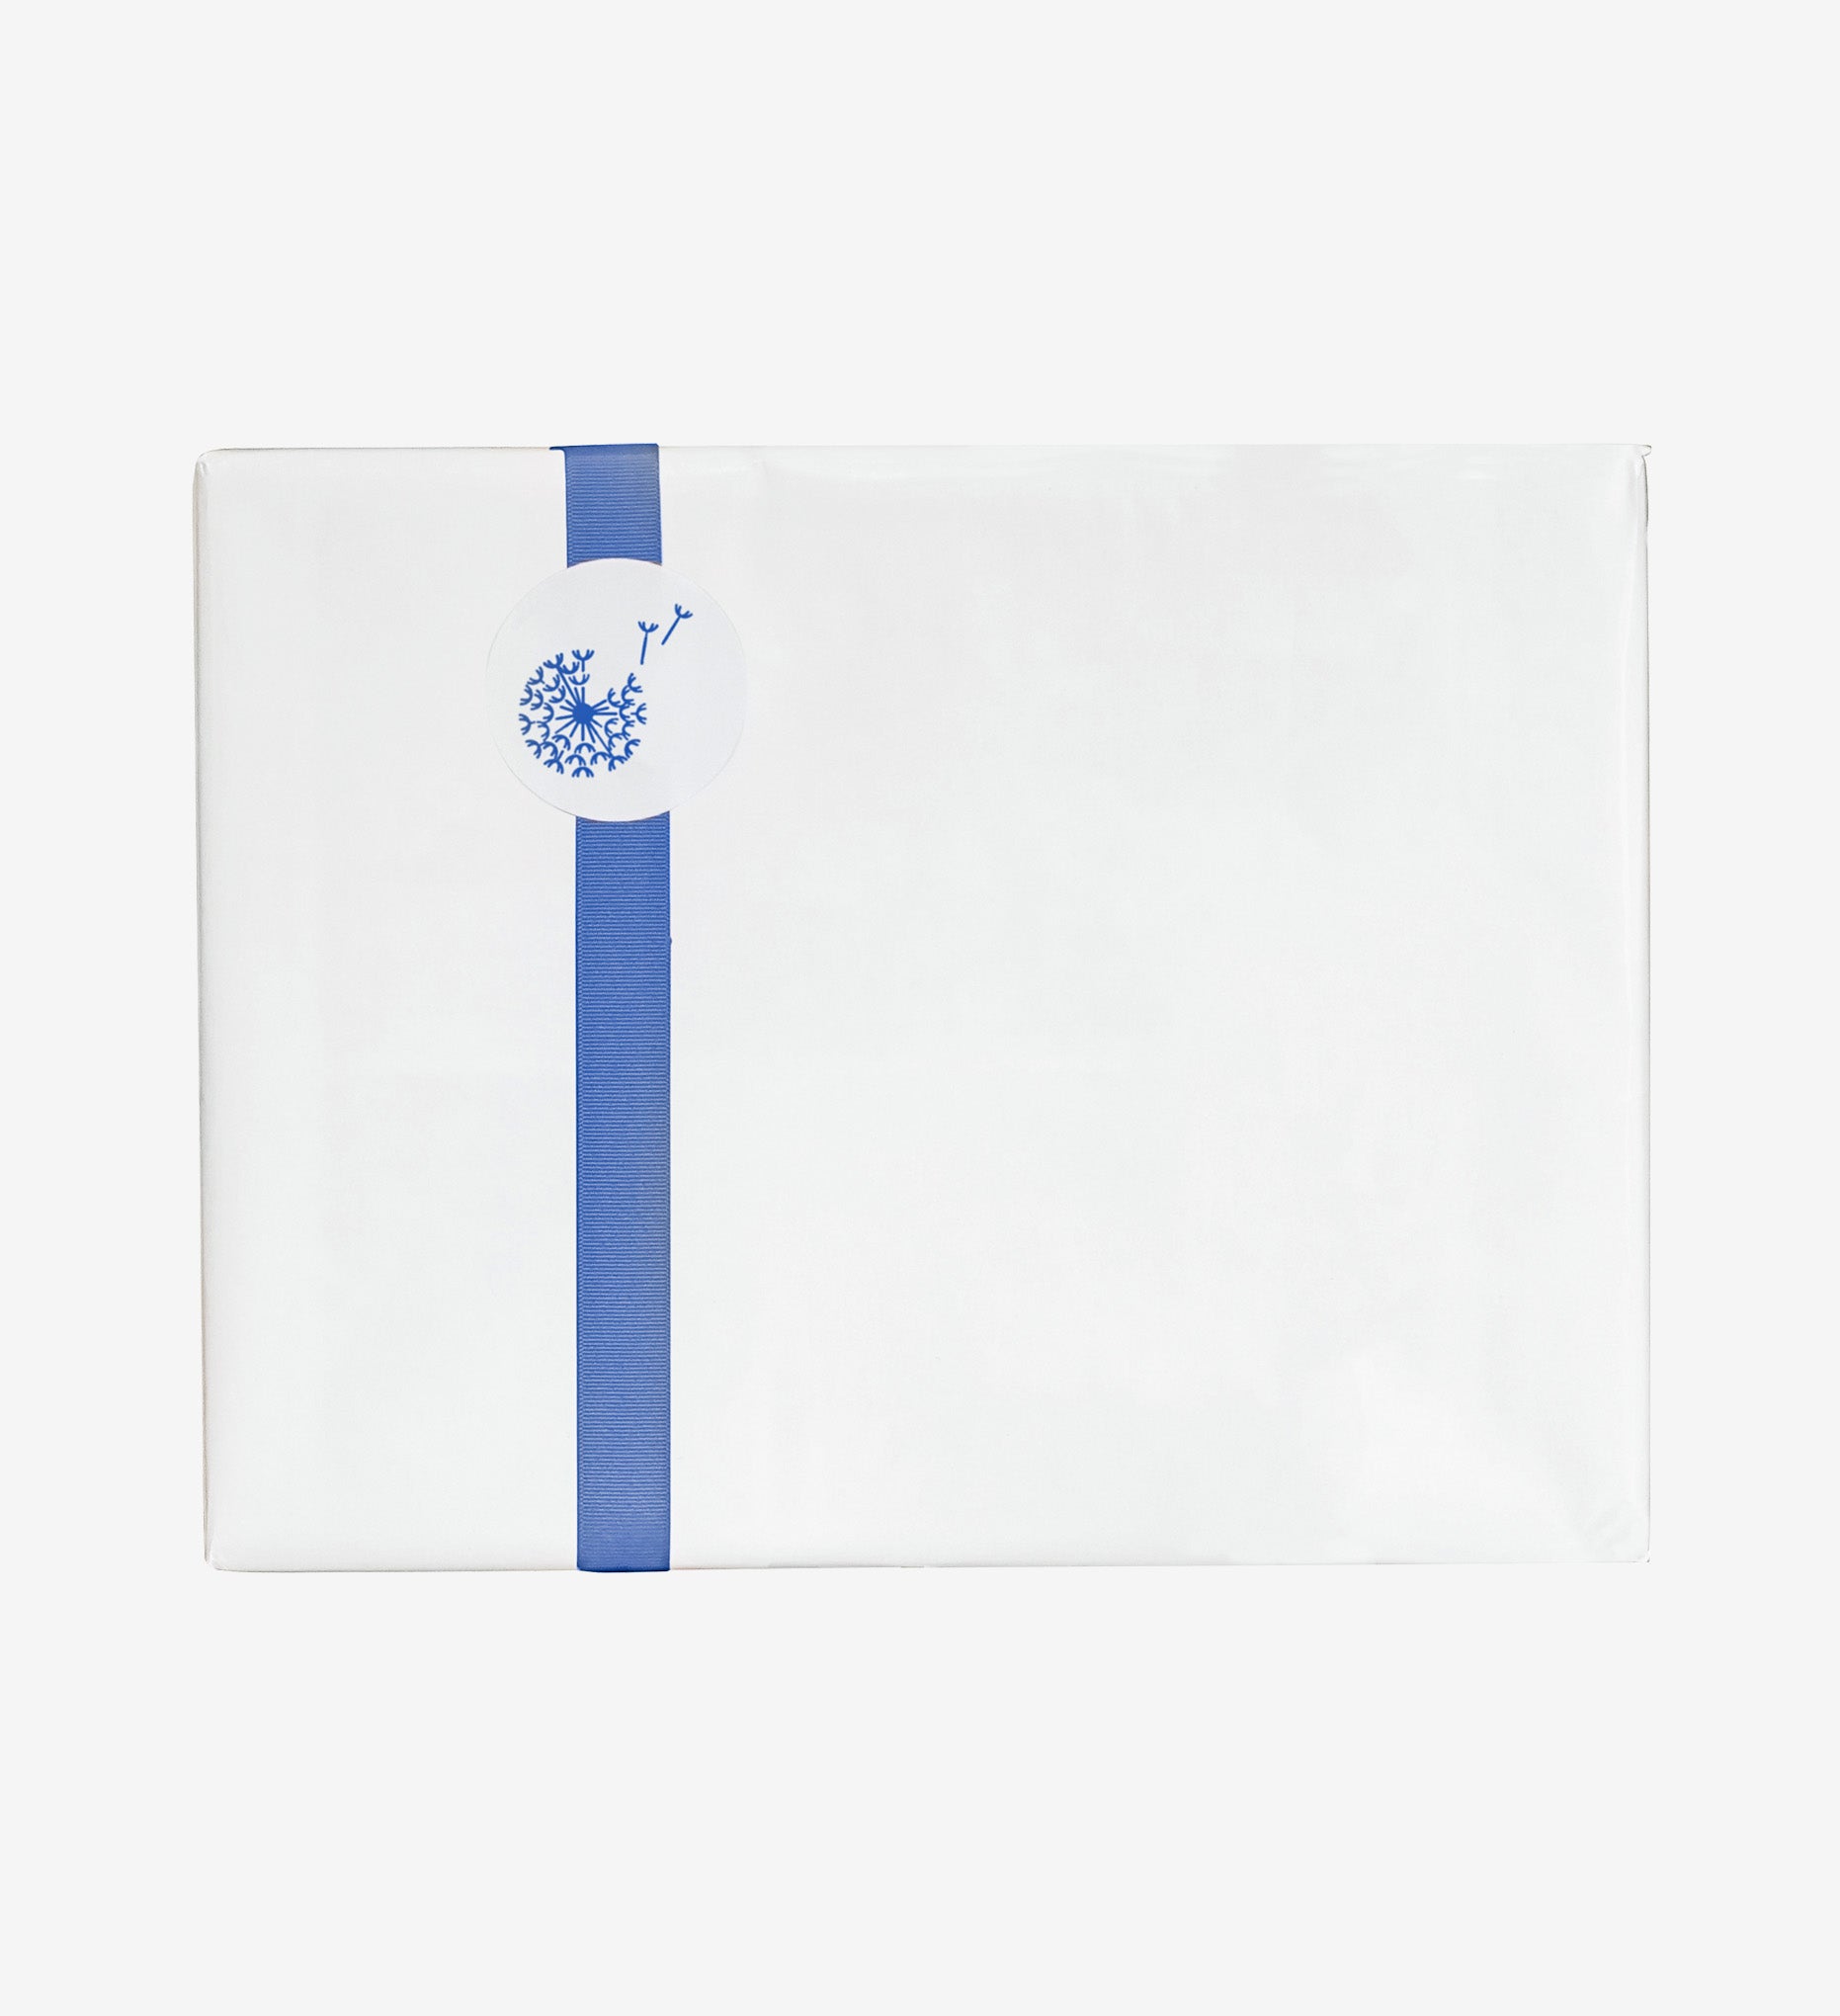 Savor gift wrap paper with flower sticker